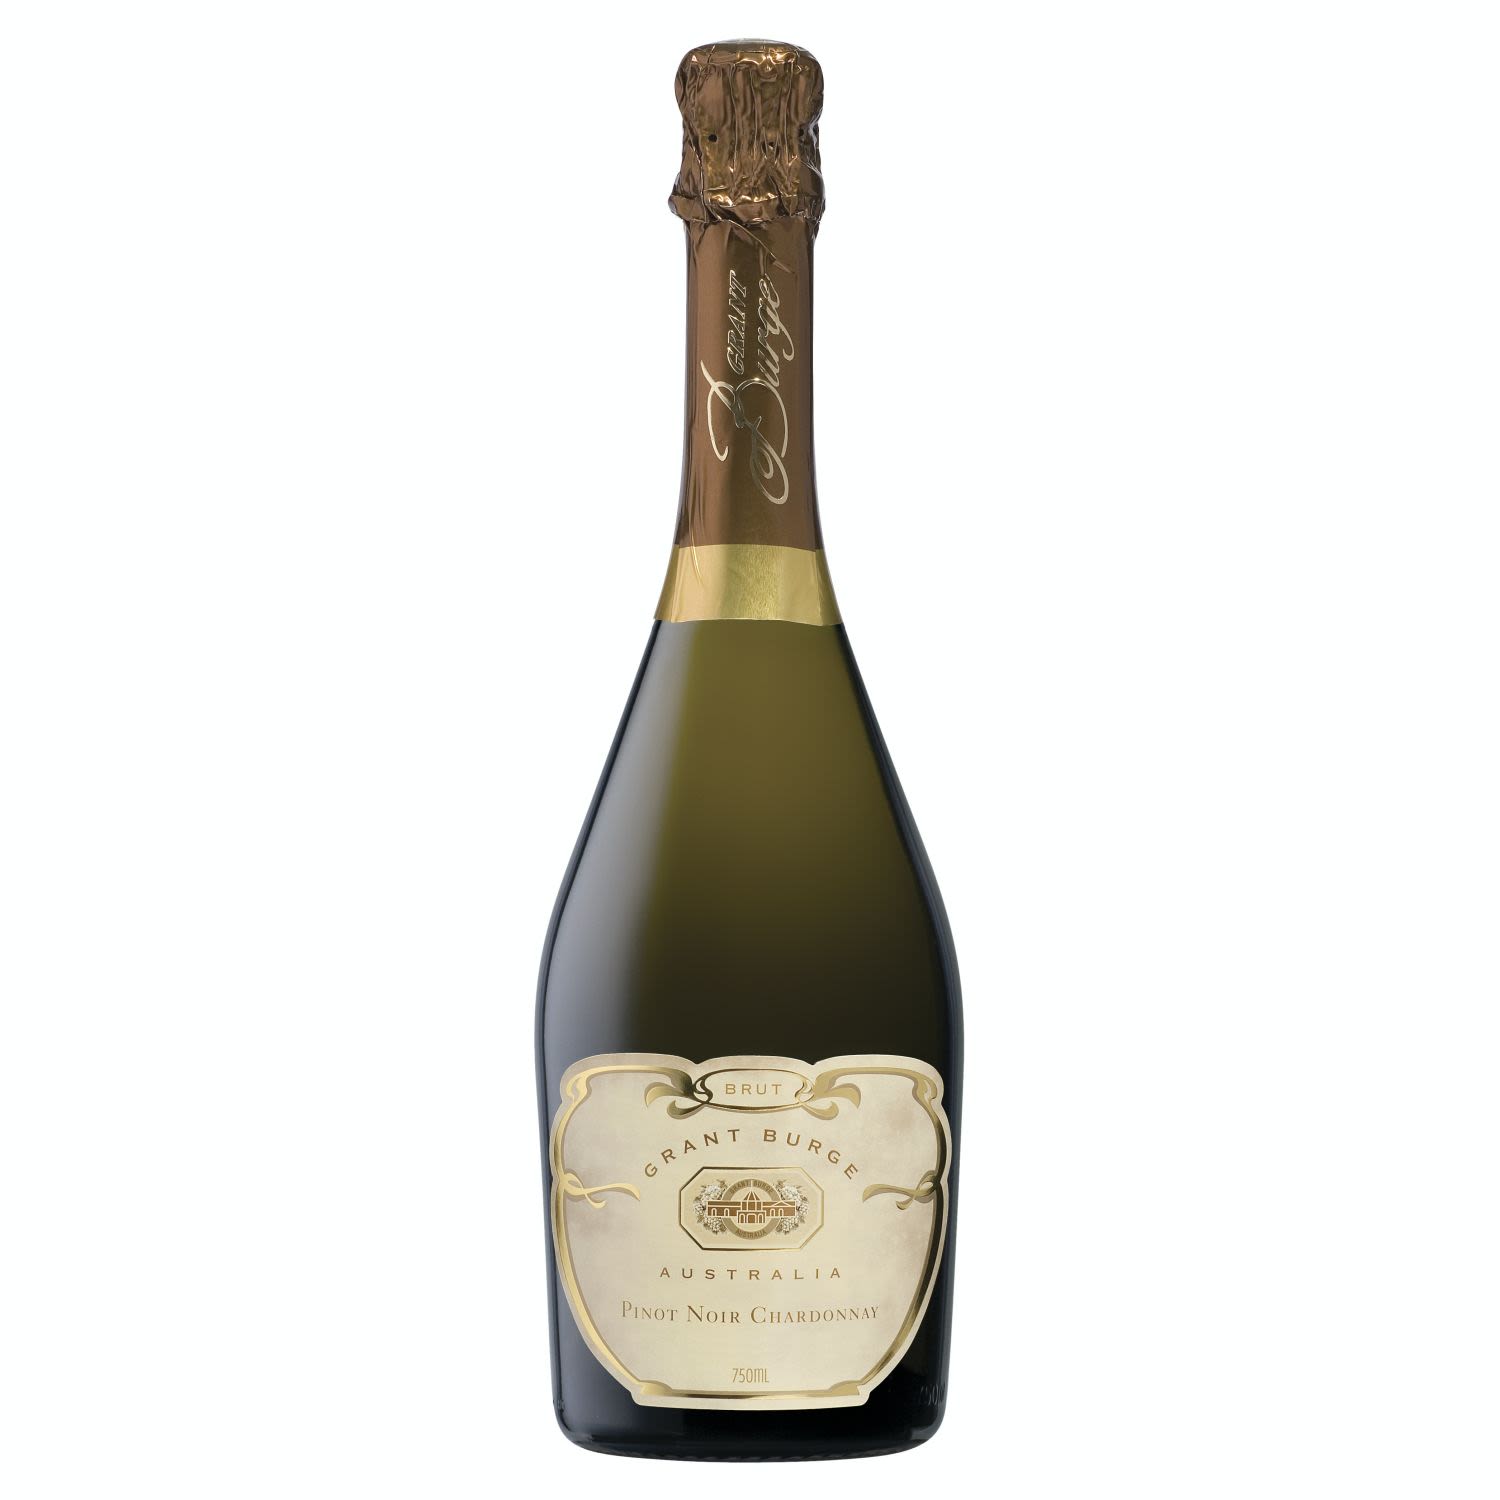 Grant Burge Pinot Noir Chardonnay 750mL<br /> <br />Alcohol Volume: 12.50%<br /><br />Pack Format: Bottle<br /><br />Standard Drinks: 7.4<br /><br />Pack Type: Bottle<br /><br />Country of Origin: Australia<br /><br />Region: Multi-Regional Blend<br /><br />Vintage: Non Vintage<br />